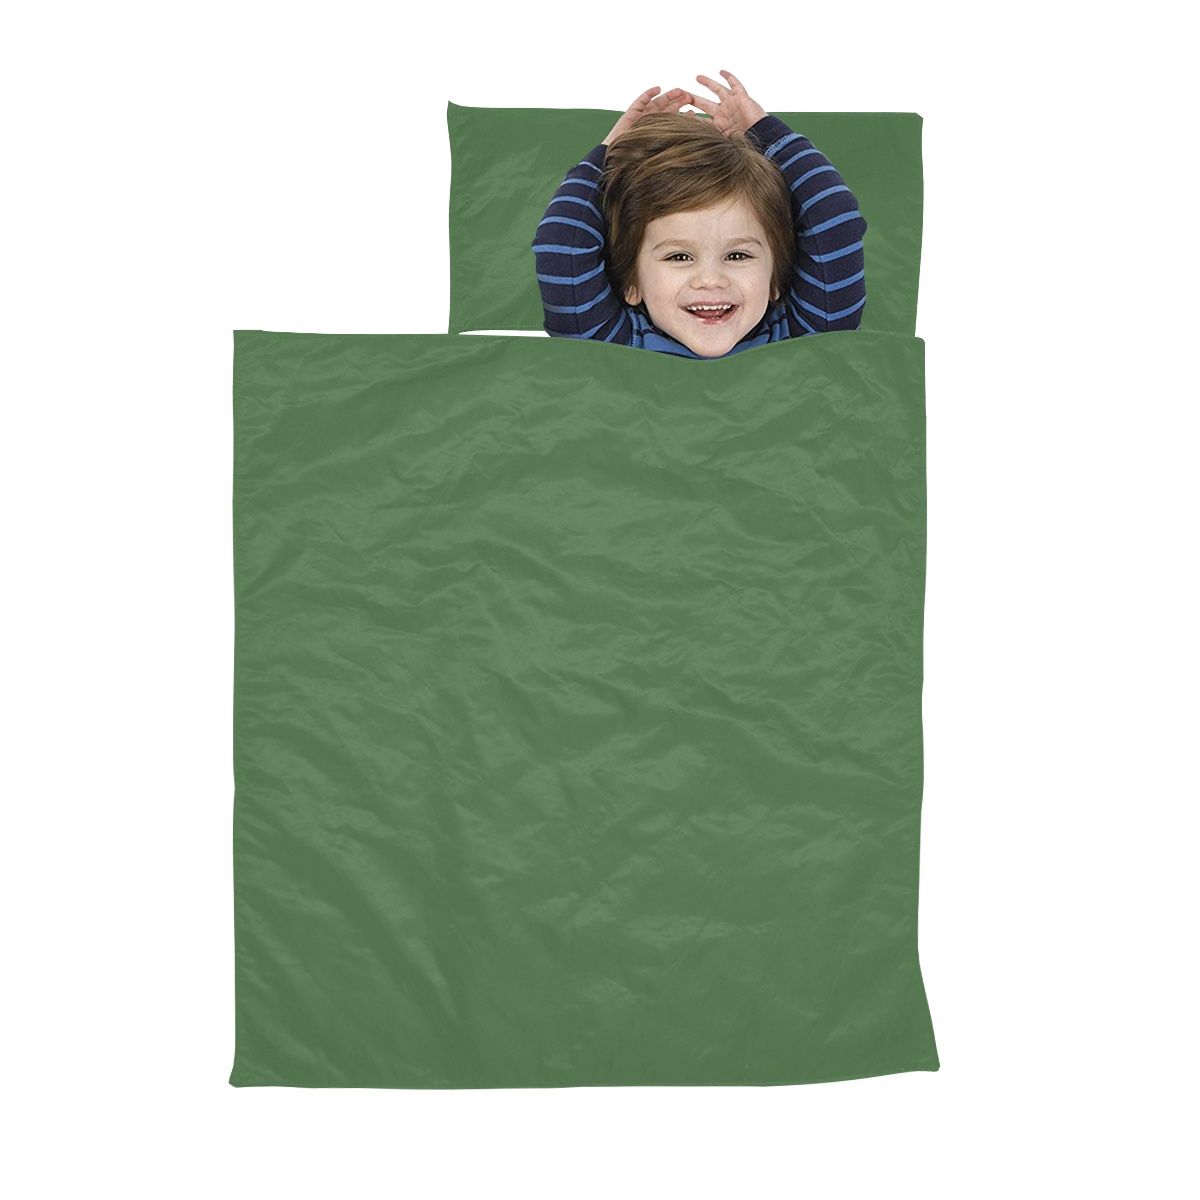 color artichoke green Kids' Sleeping Bag